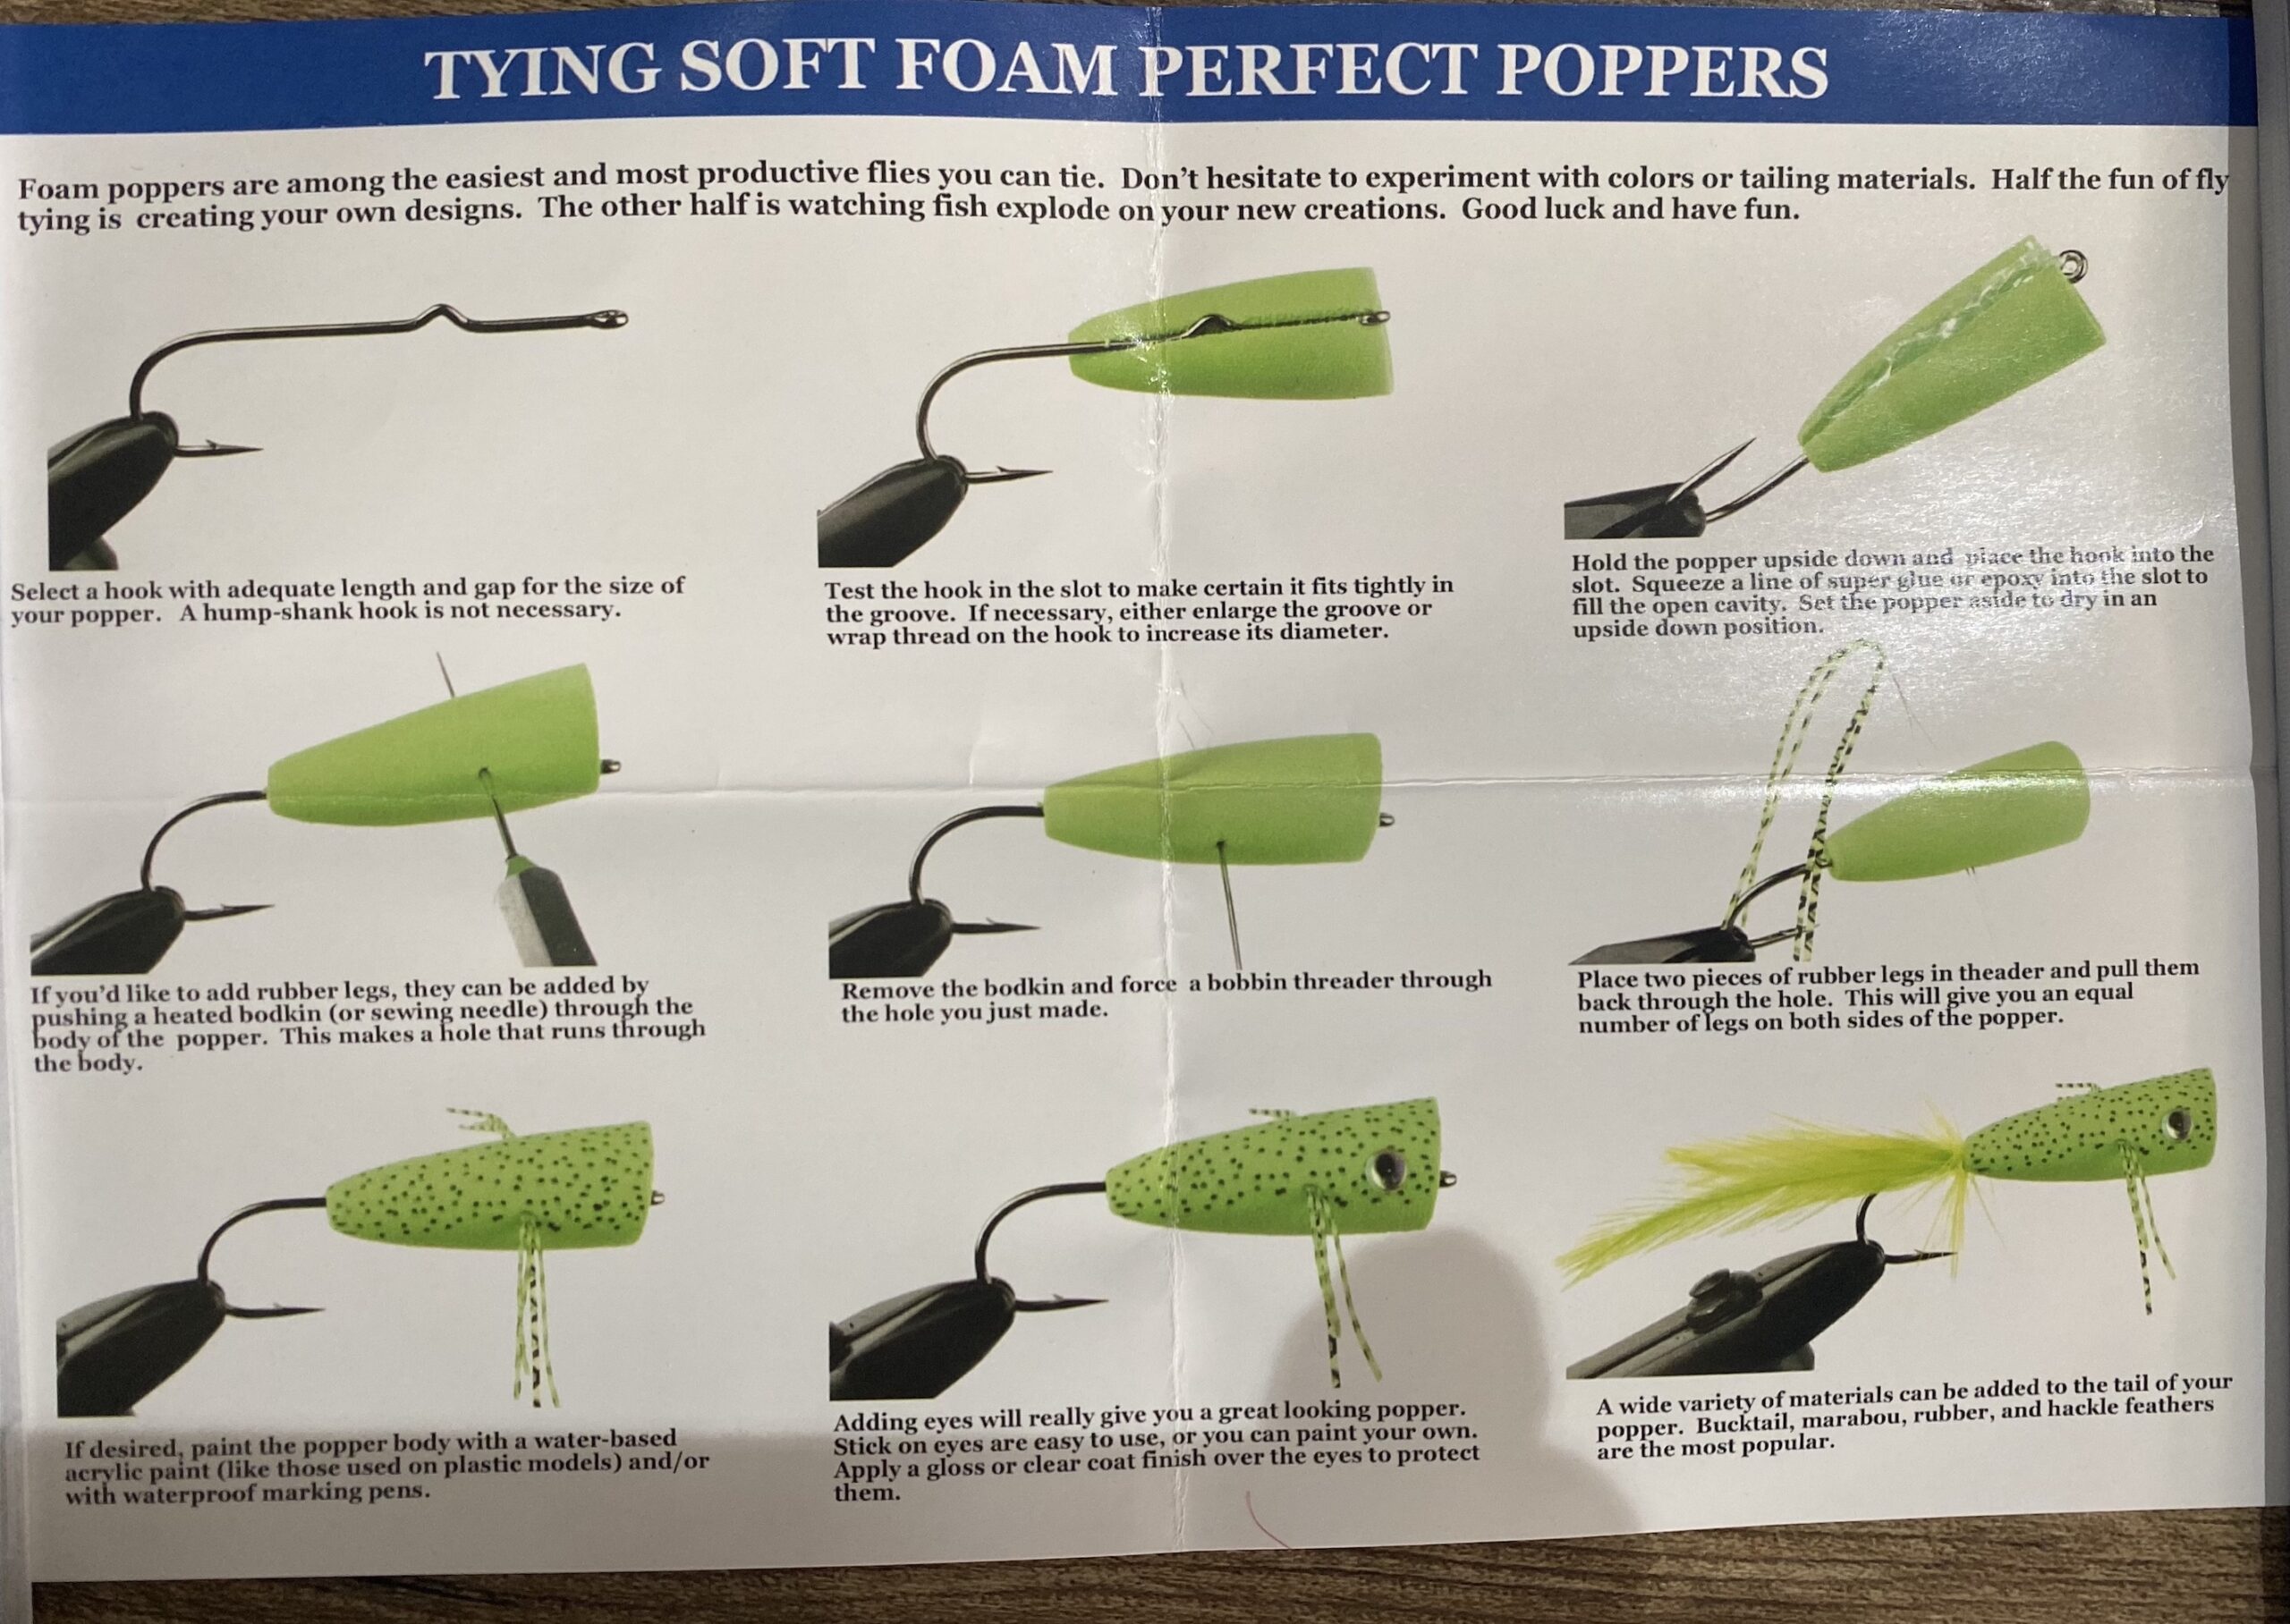 Foam Popper Bodies - Half Cone